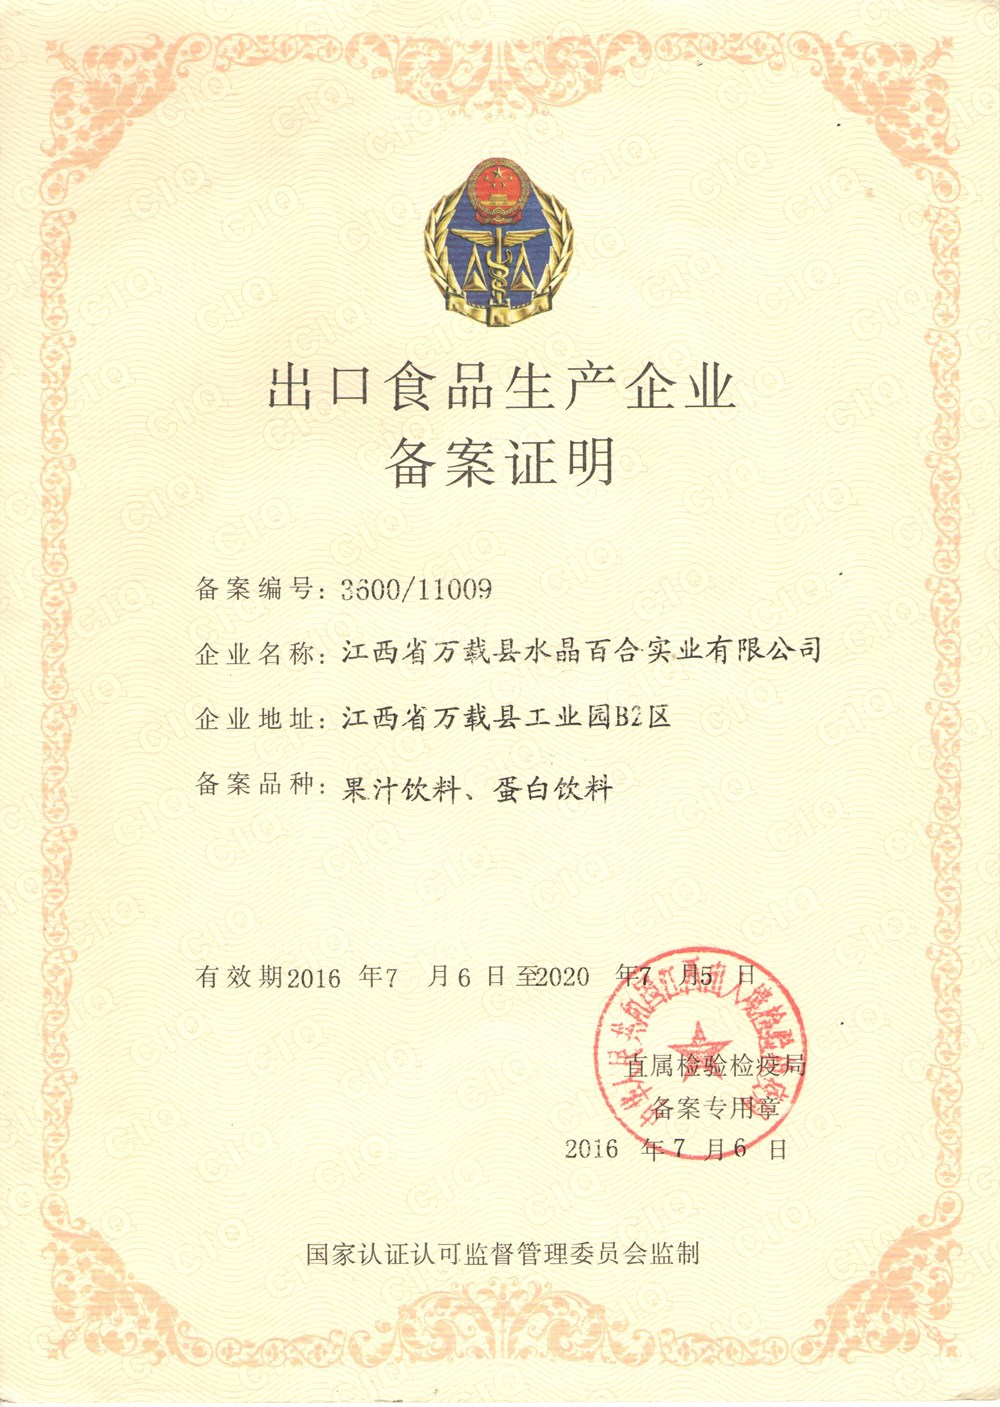 Food Export Certificate